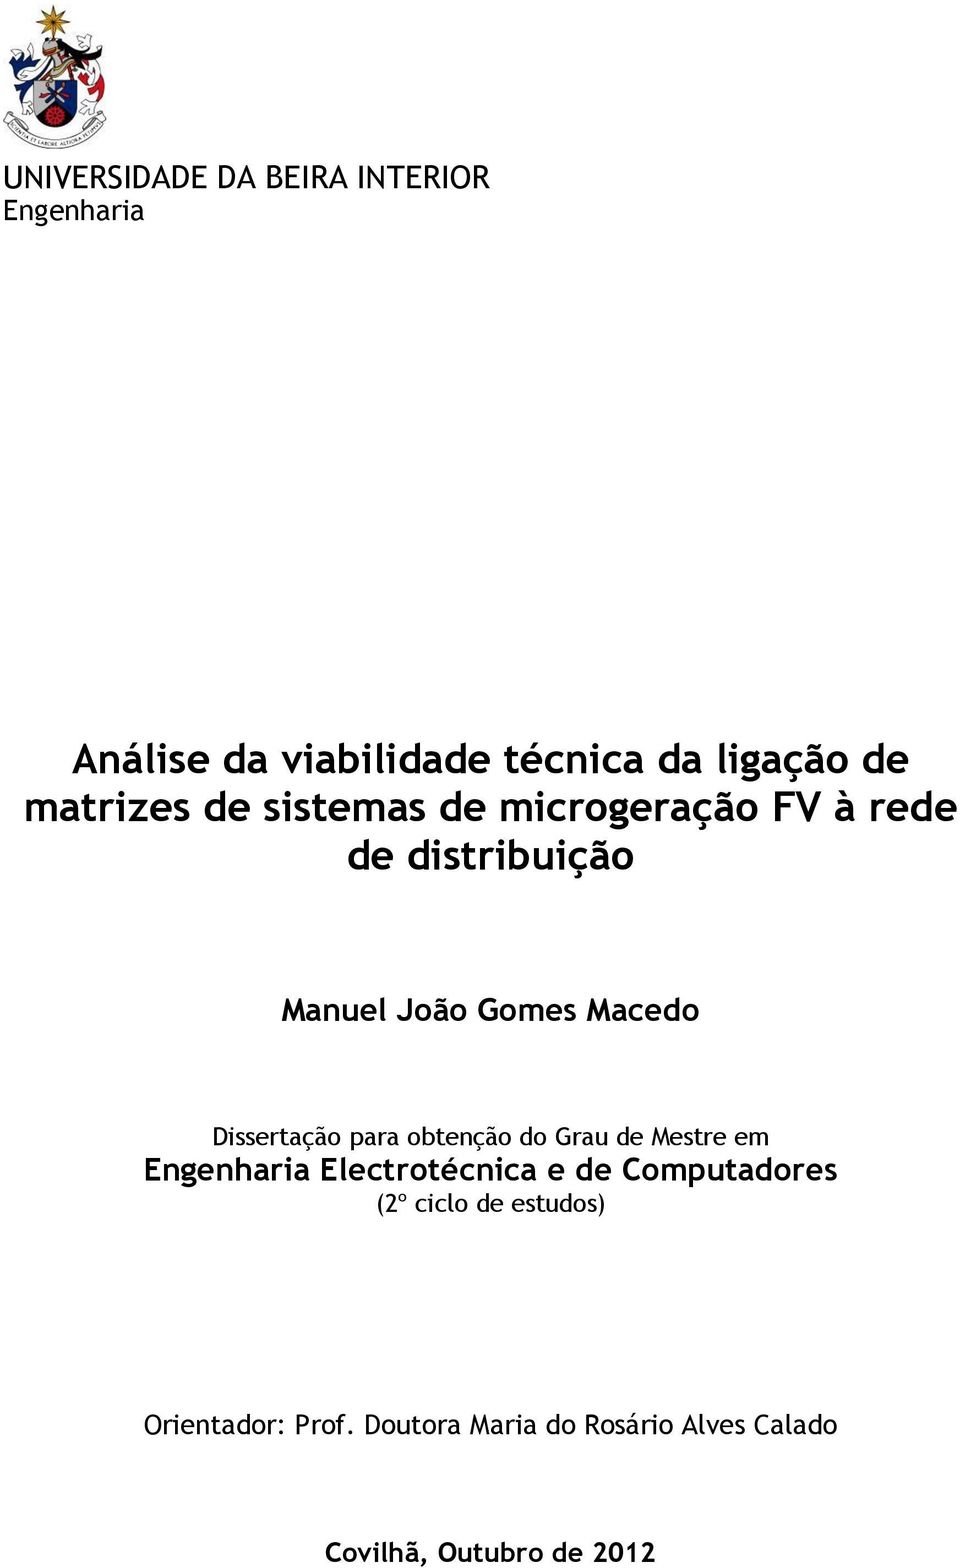 Dissertação para obtenção do Grau de Mestre em Engenharia Electrotécnica e de Computadores